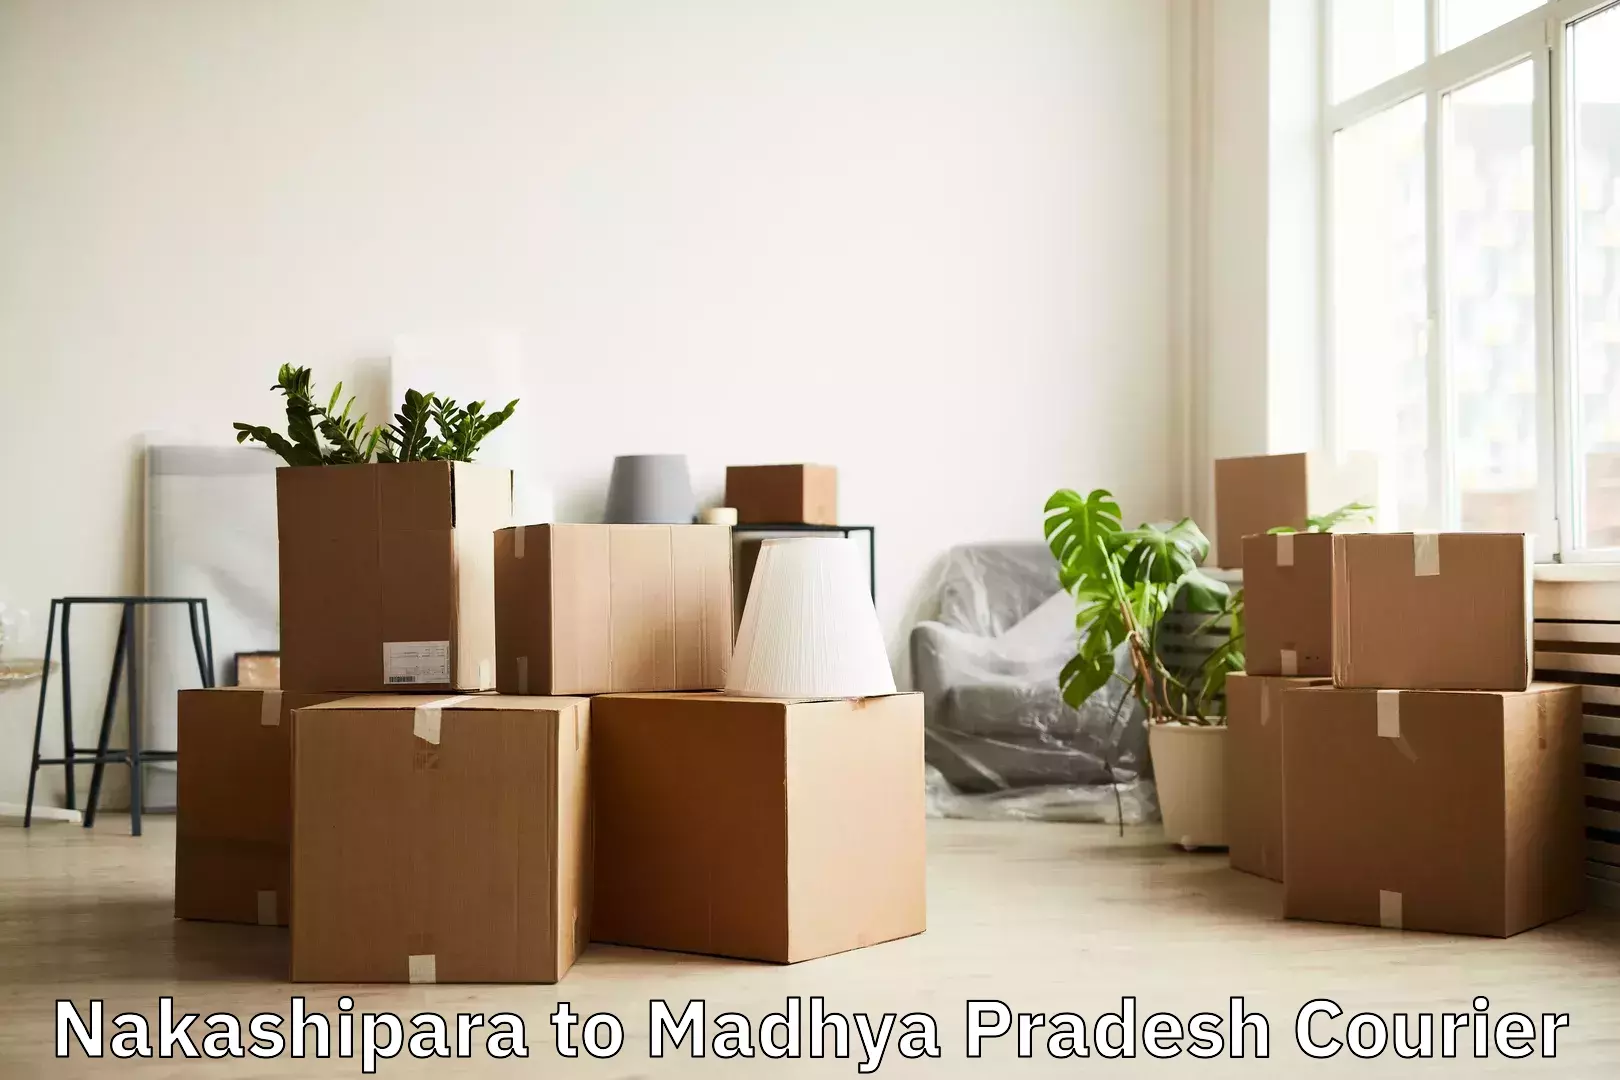 Baggage delivery management Nakashipara to Madhya Pradesh